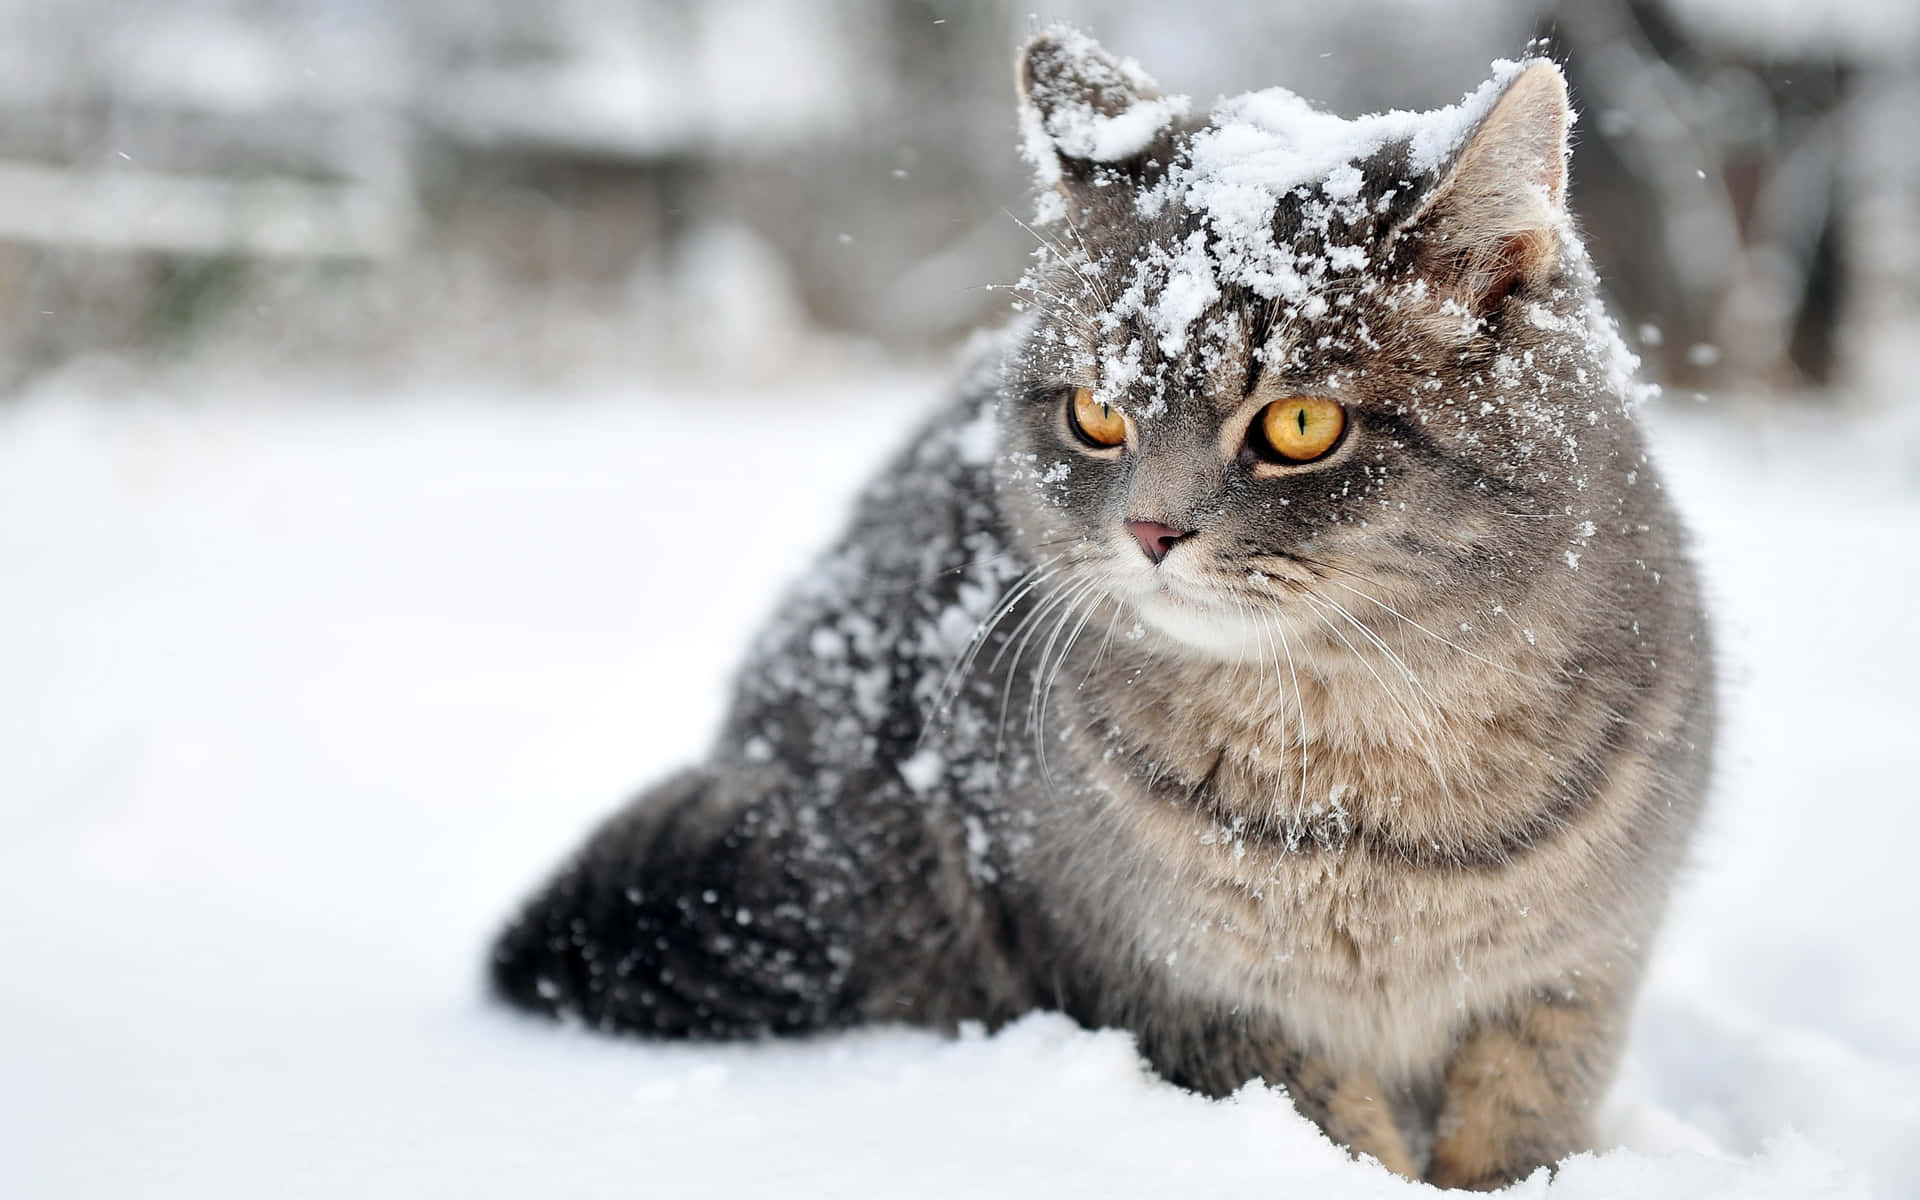 Imagende Un Gato British Shorthair En La Nieve